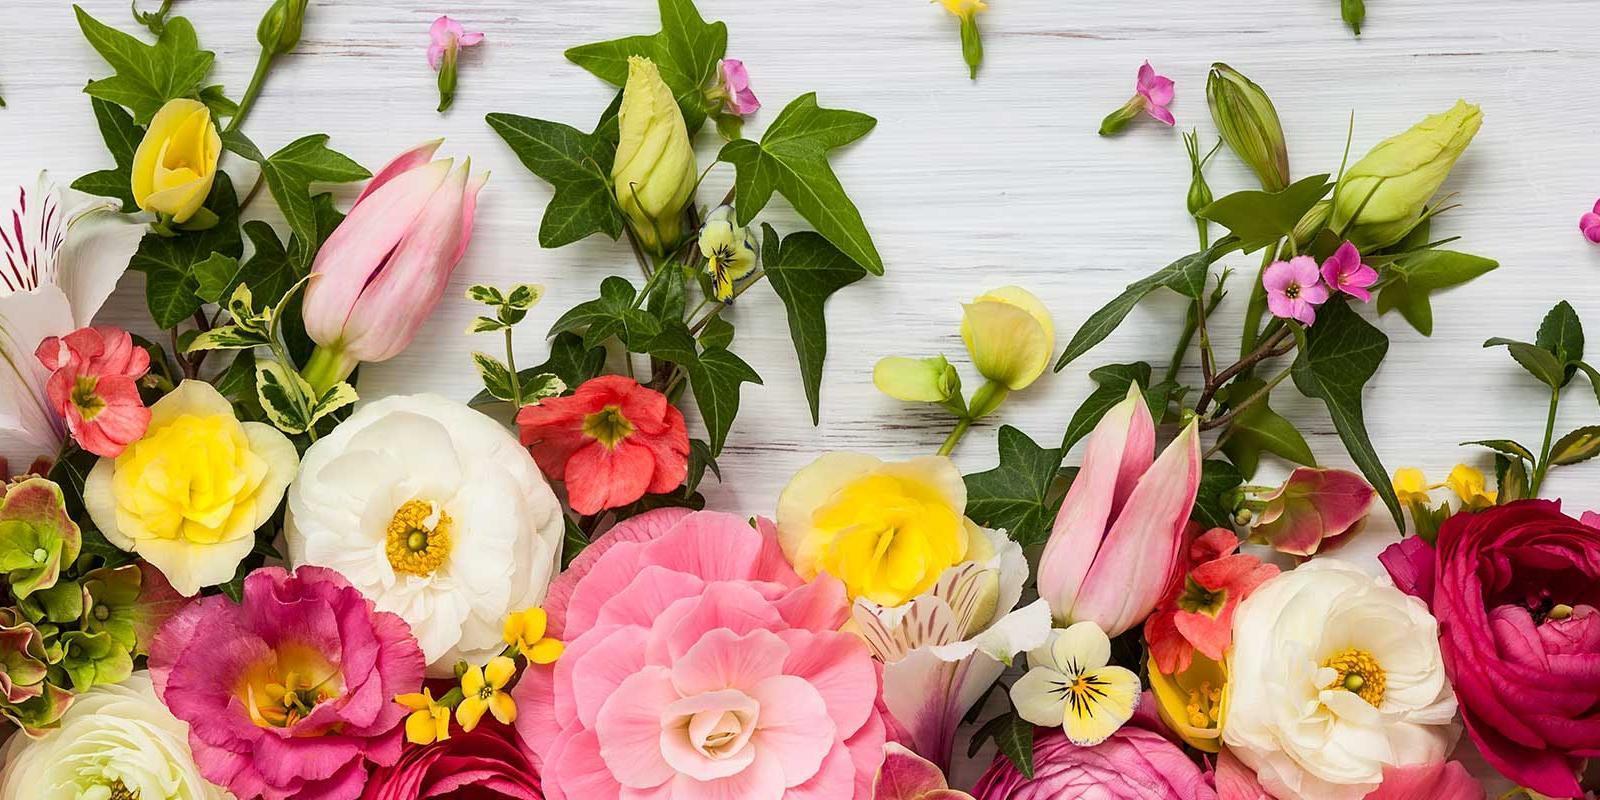 Snijbloemen van het seizoen: zegt de kweker? - Bloemen en planten groothandel Roobos